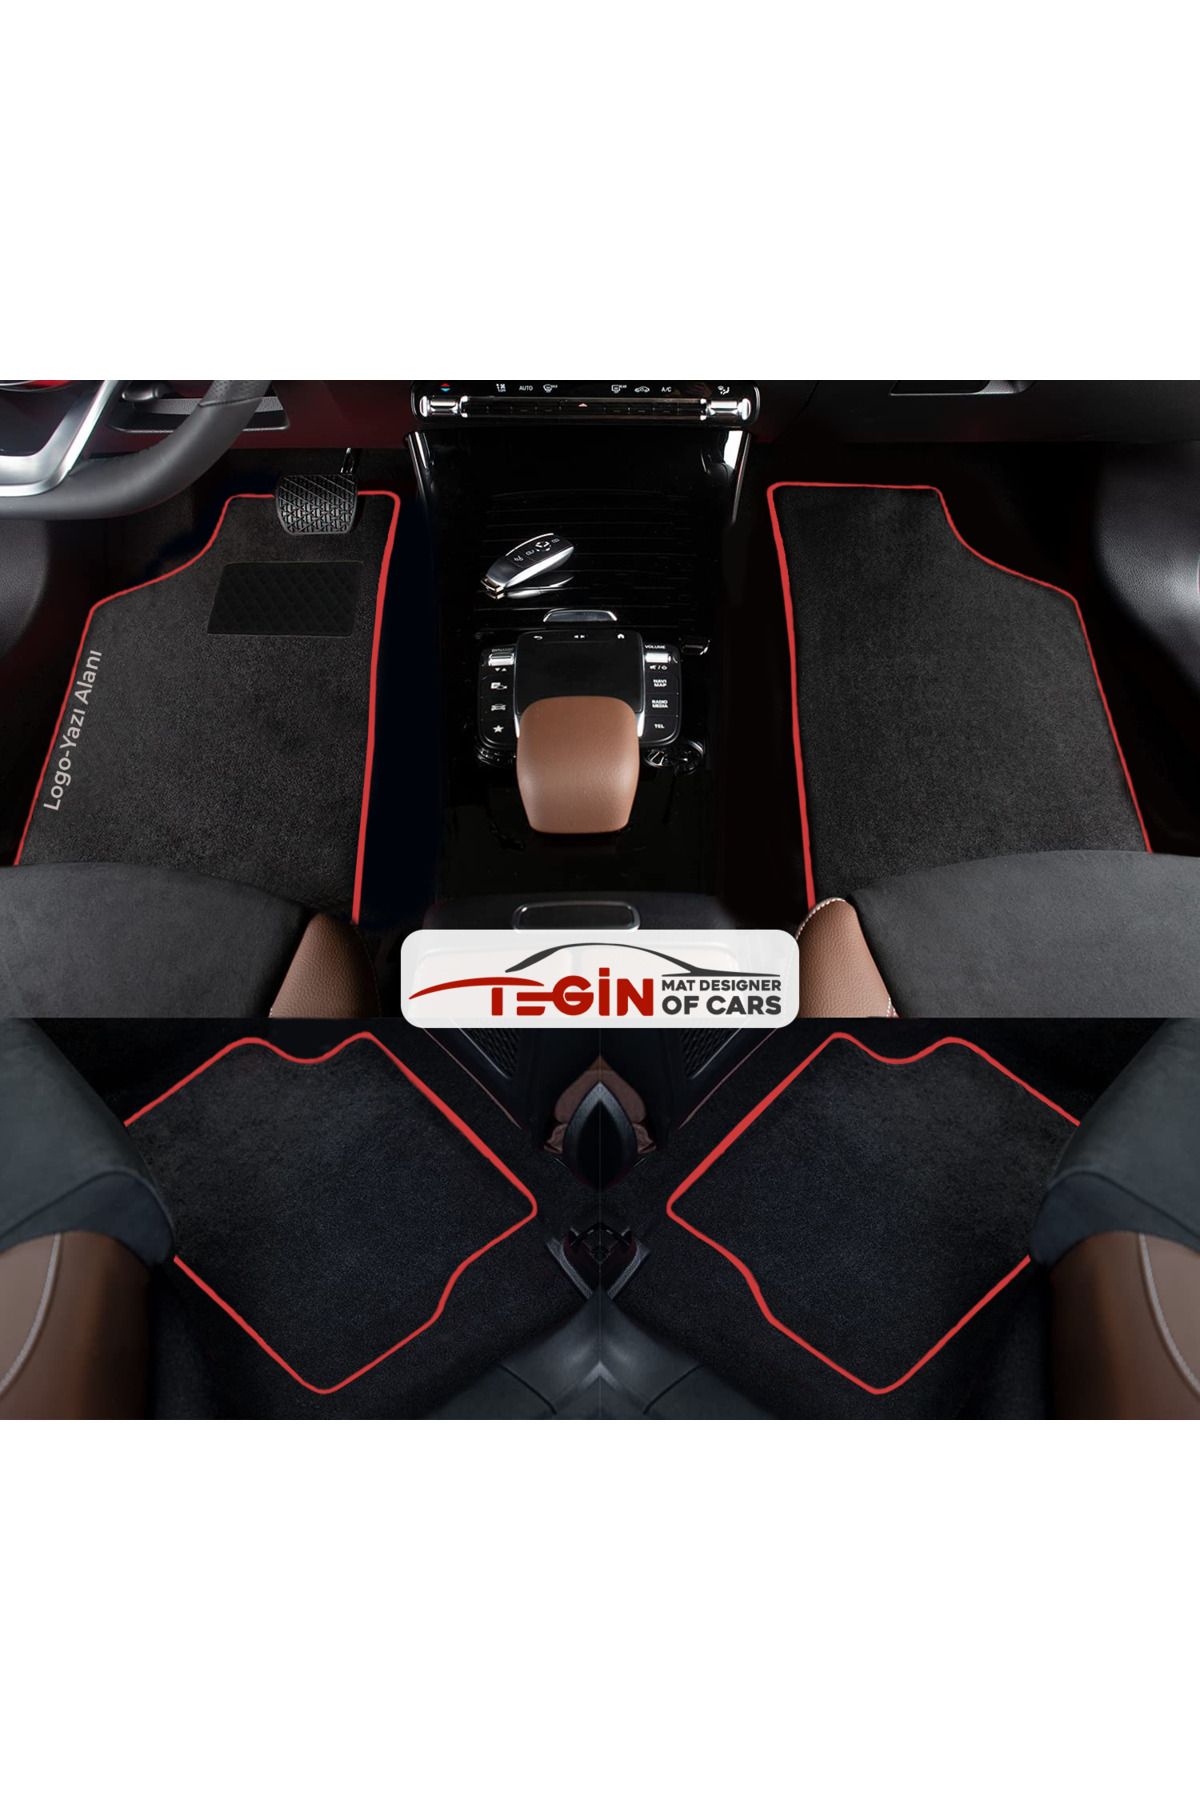 Tegin Mat Designer Of Cars Volkwagen Golf 6 Prime Siyah Halı Kırmızı Kenar Halı Paspas